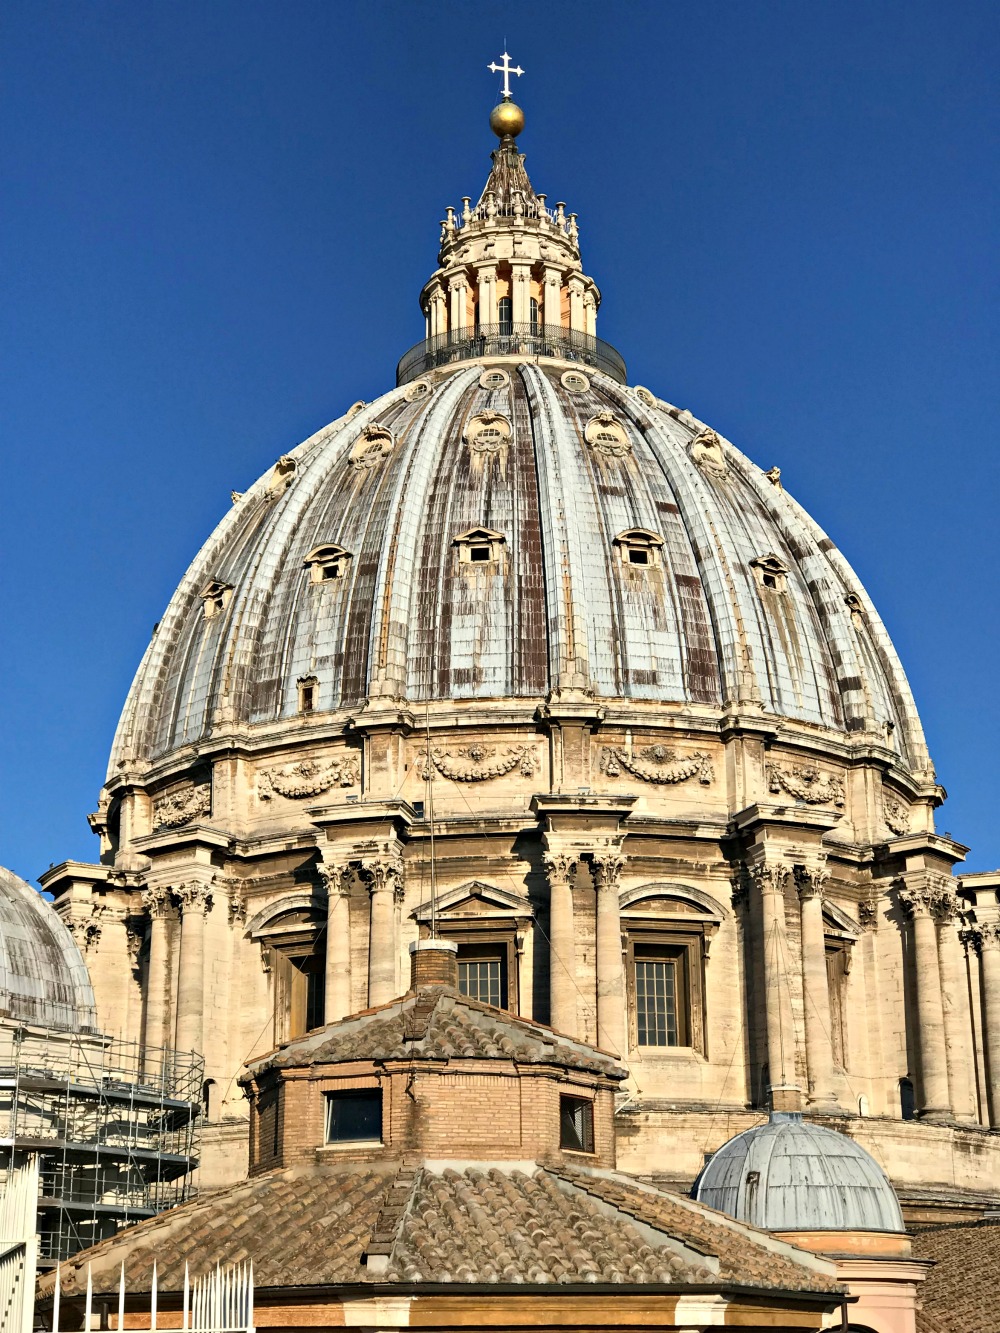 Vatican city skip the line tour